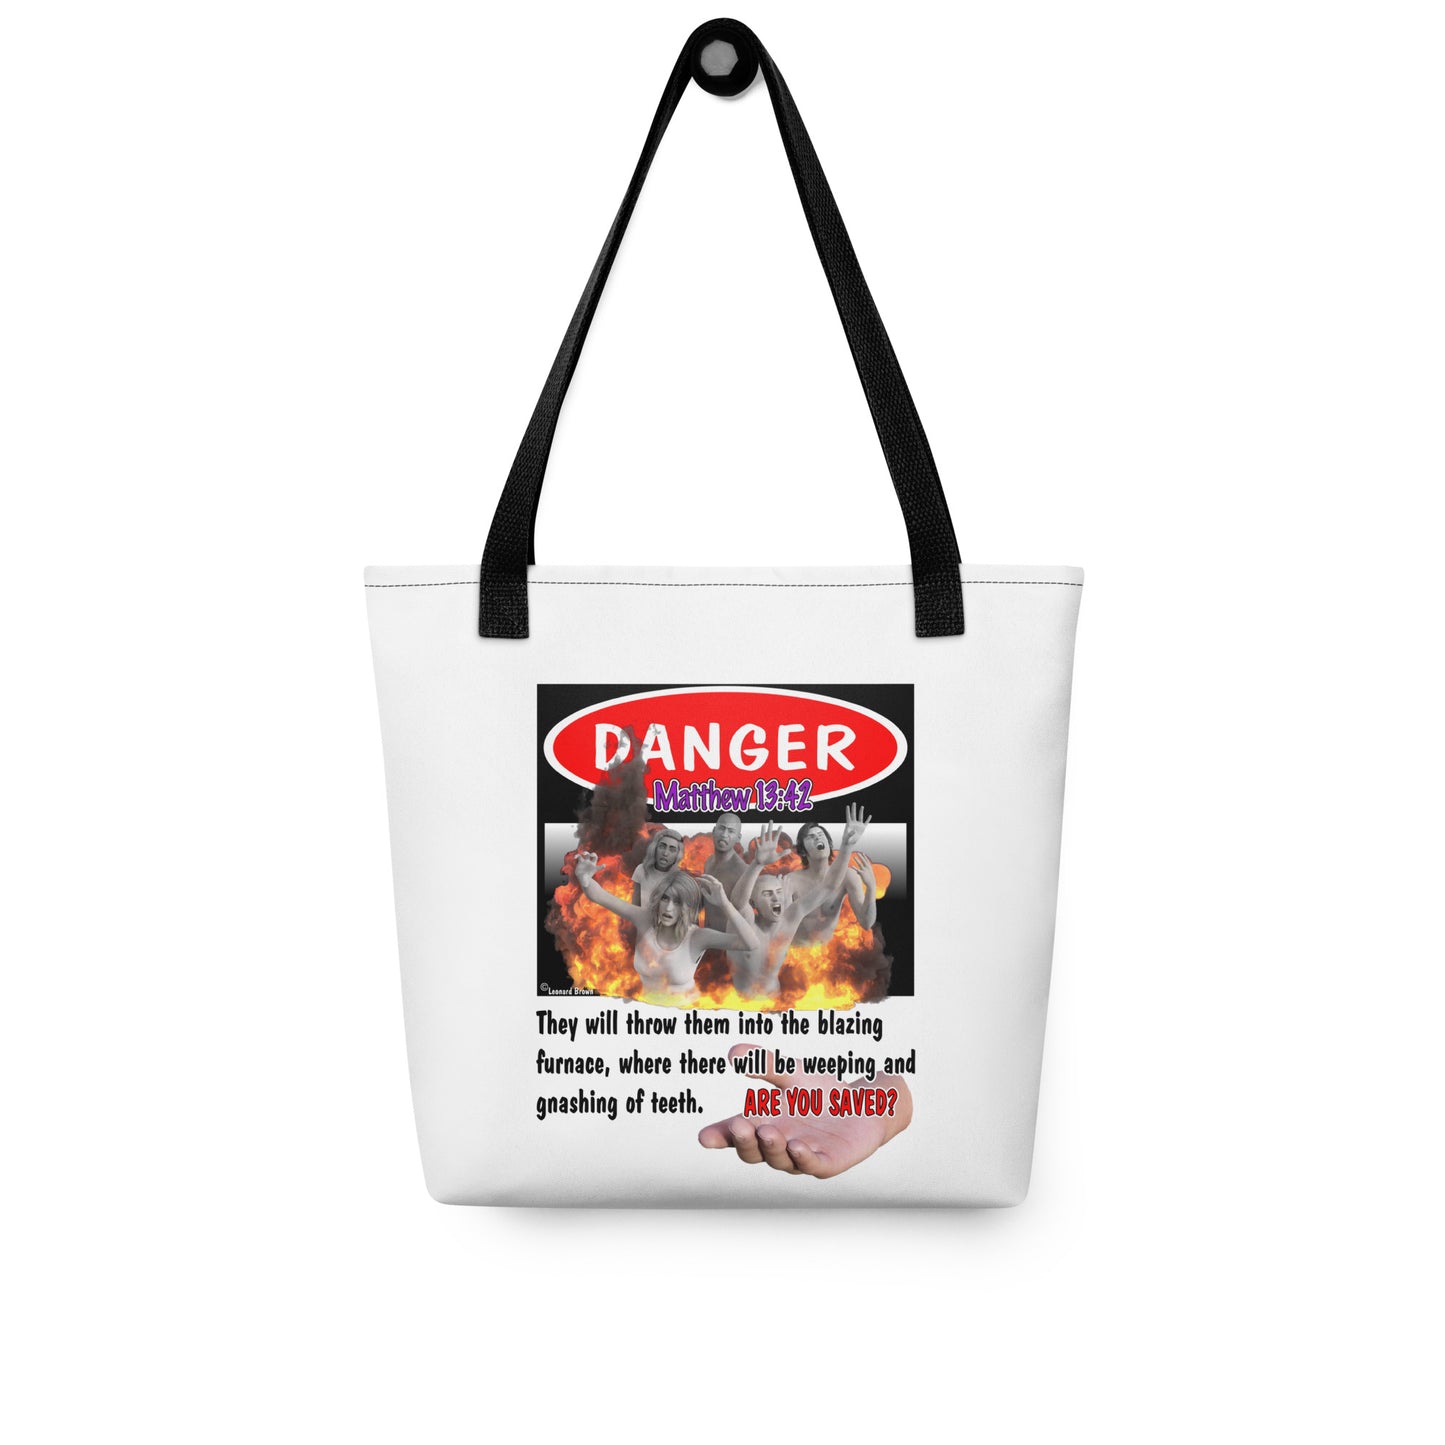 Danger Tote bag